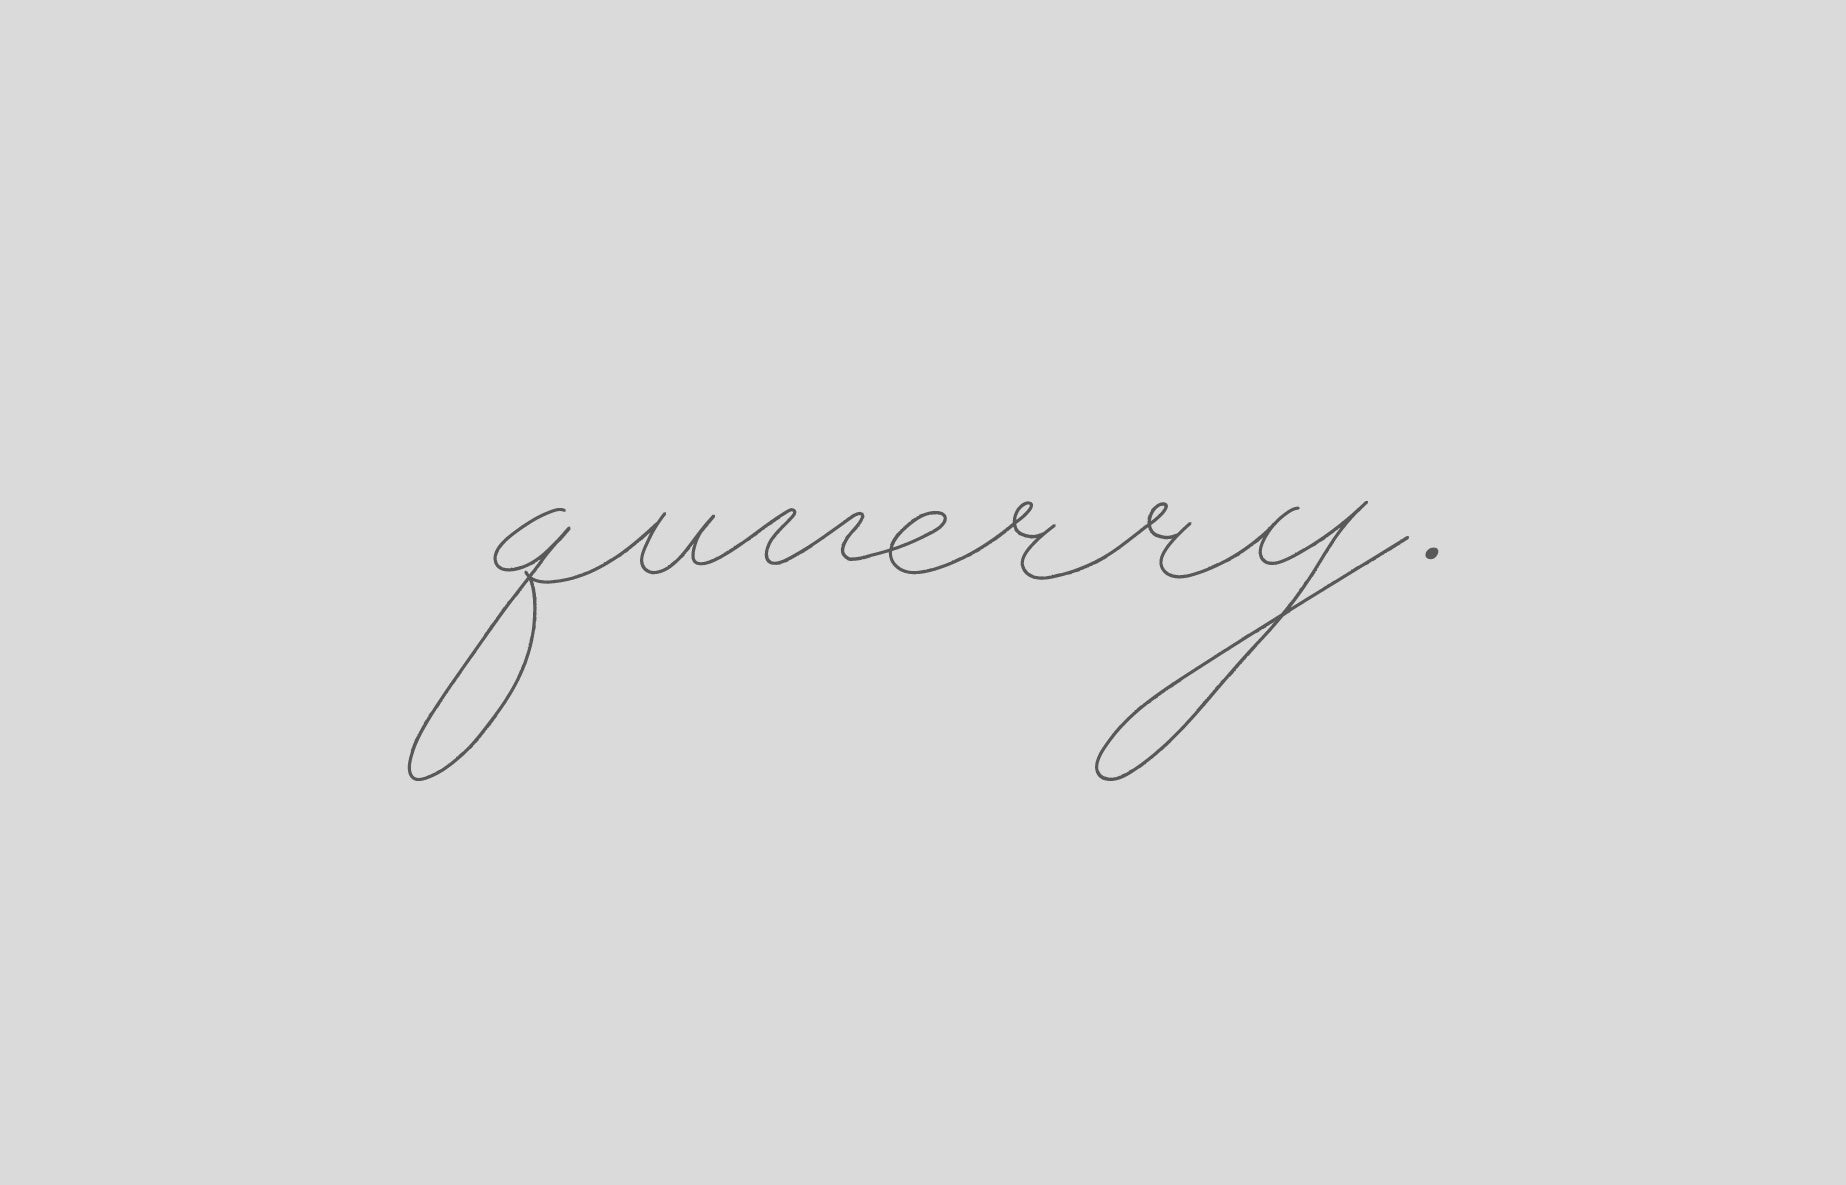 「qumerry.」ロゴ